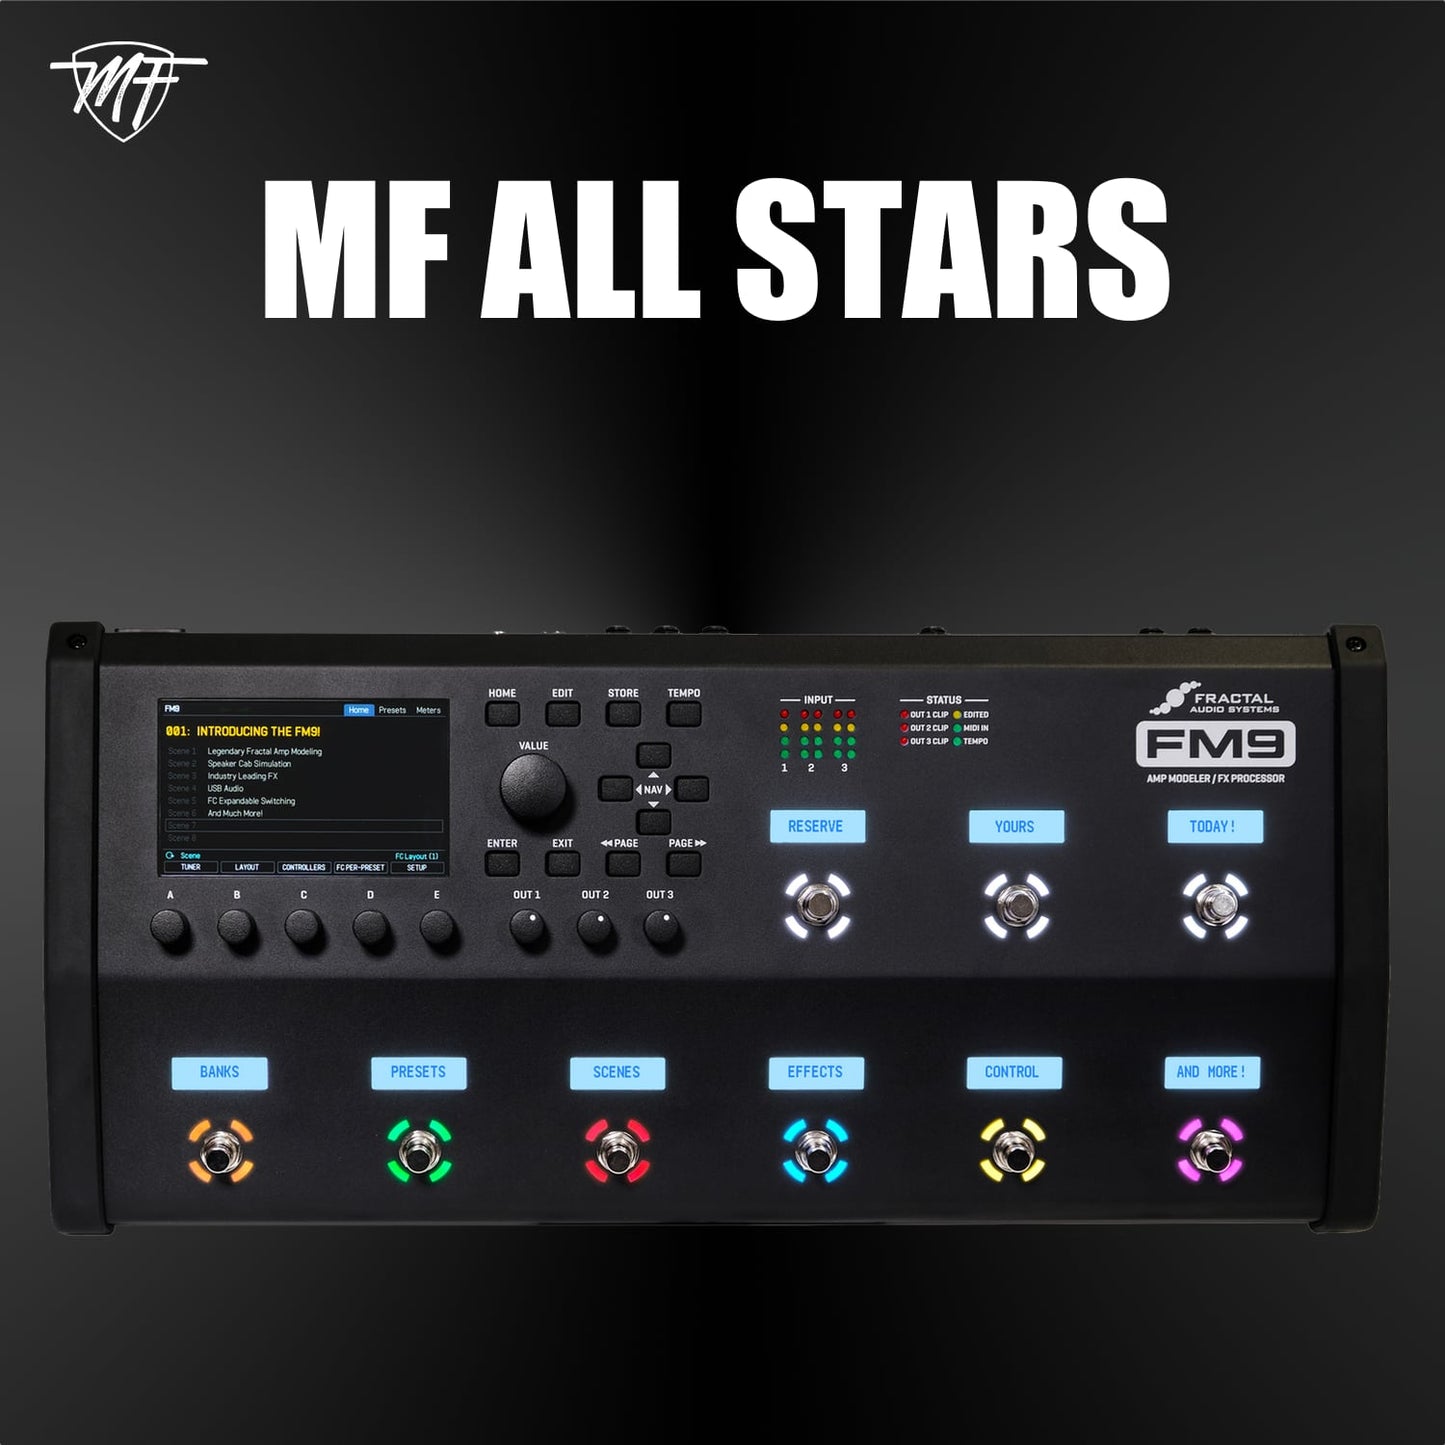 MF ALL STARS FM9